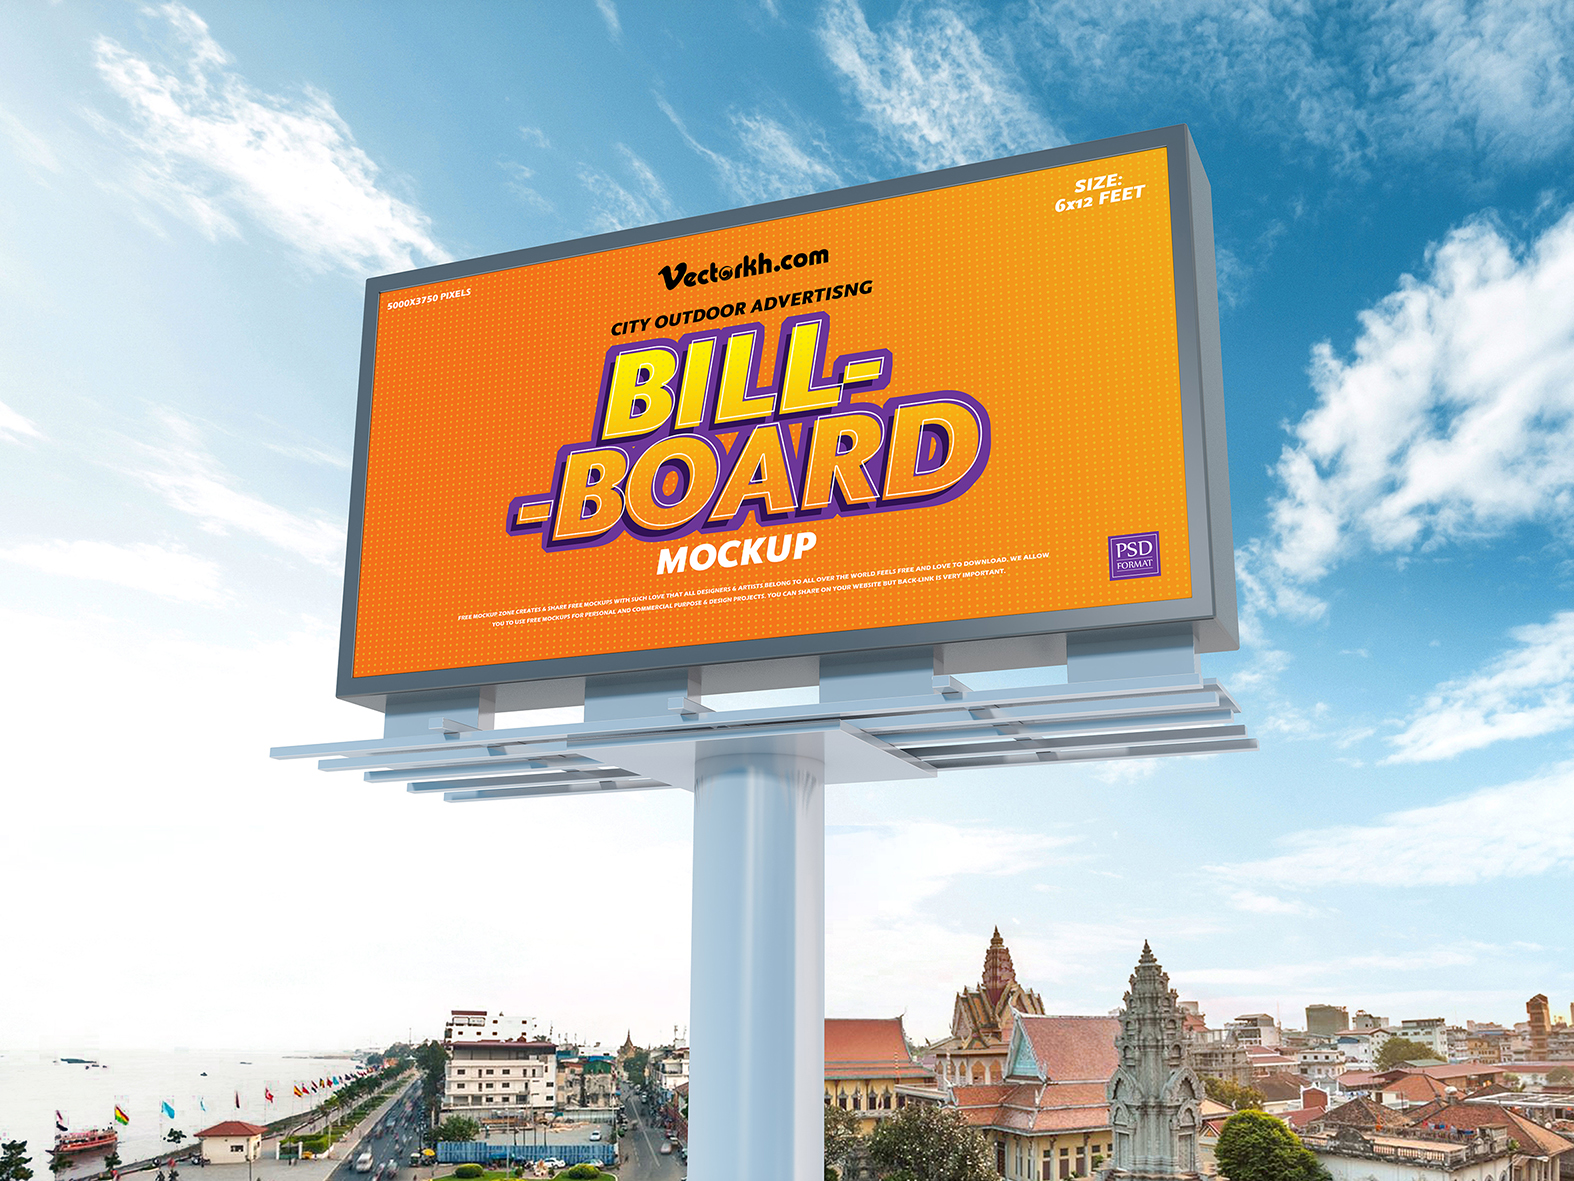 Download subway ad mockup free, bus advertising mockup billboard mockup free psd template - vectorkh